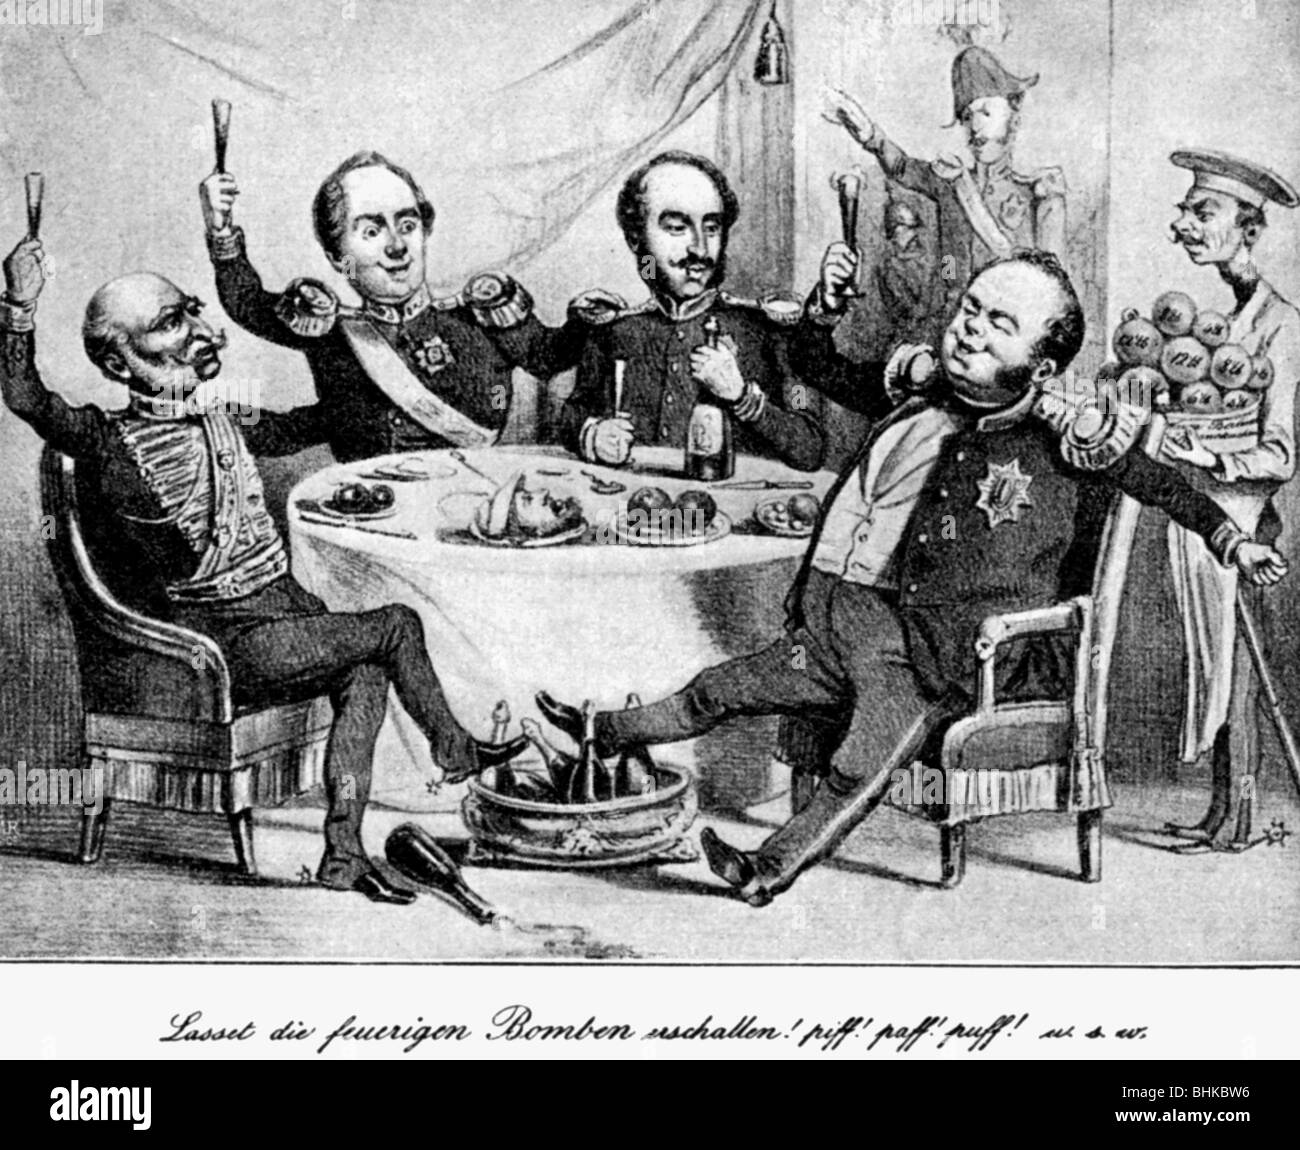 Friedrich Wilhelm IV., 15.10.95 - 2.1.1861, König von Preßburg 7.6.1840 - 26.10.1858, Karikatur, "Let have the feury Bombs resound", Hamburg, 1848, Stockfoto